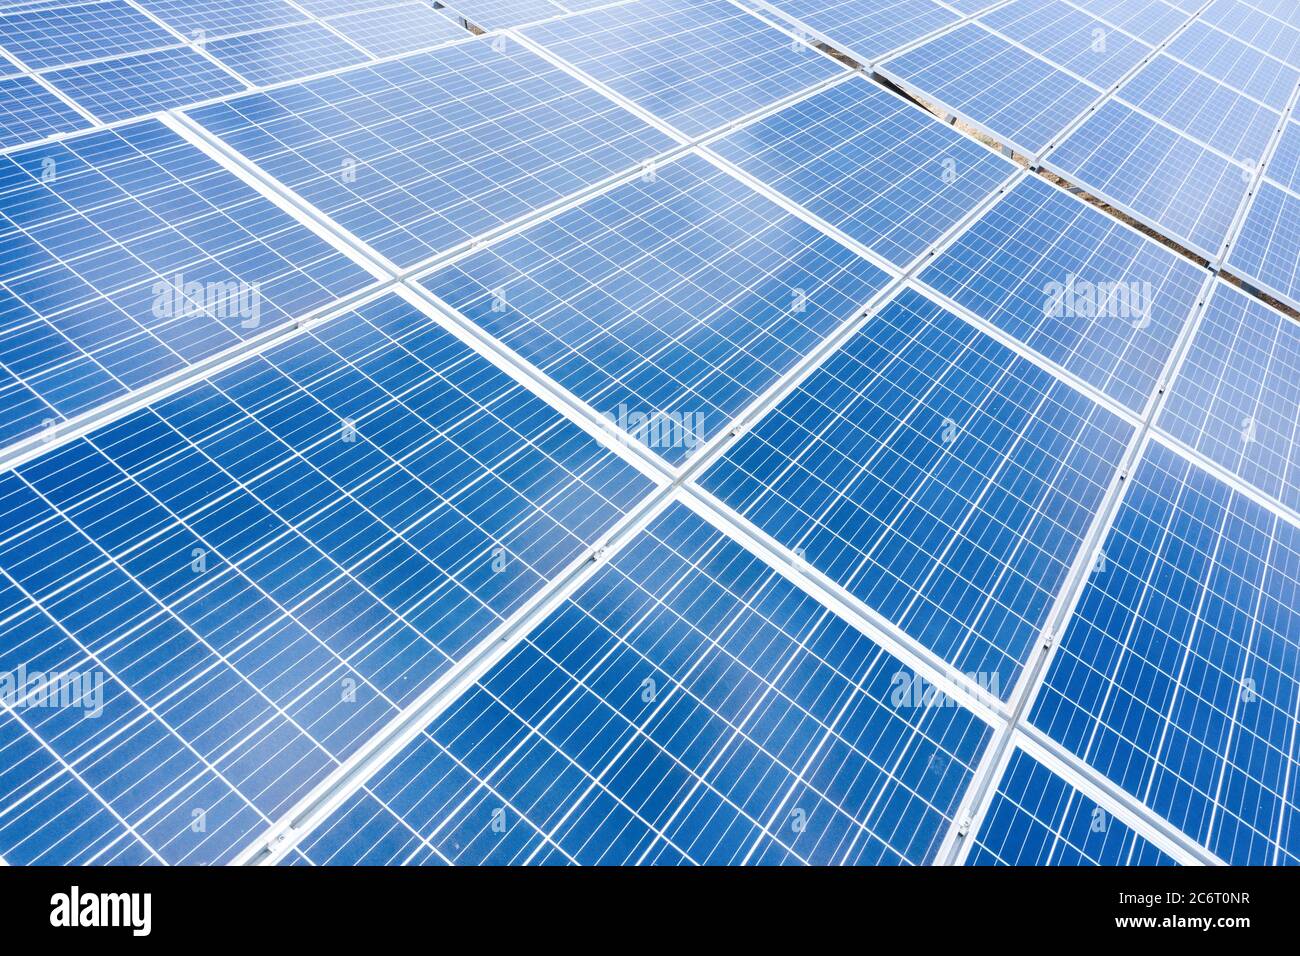 Vue rapprochée en plan des panneaux d'énergie solaire. Concept d'énergie propre et renouvelable pour un écosystème durable. Photo de haute qualité Banque D'Images